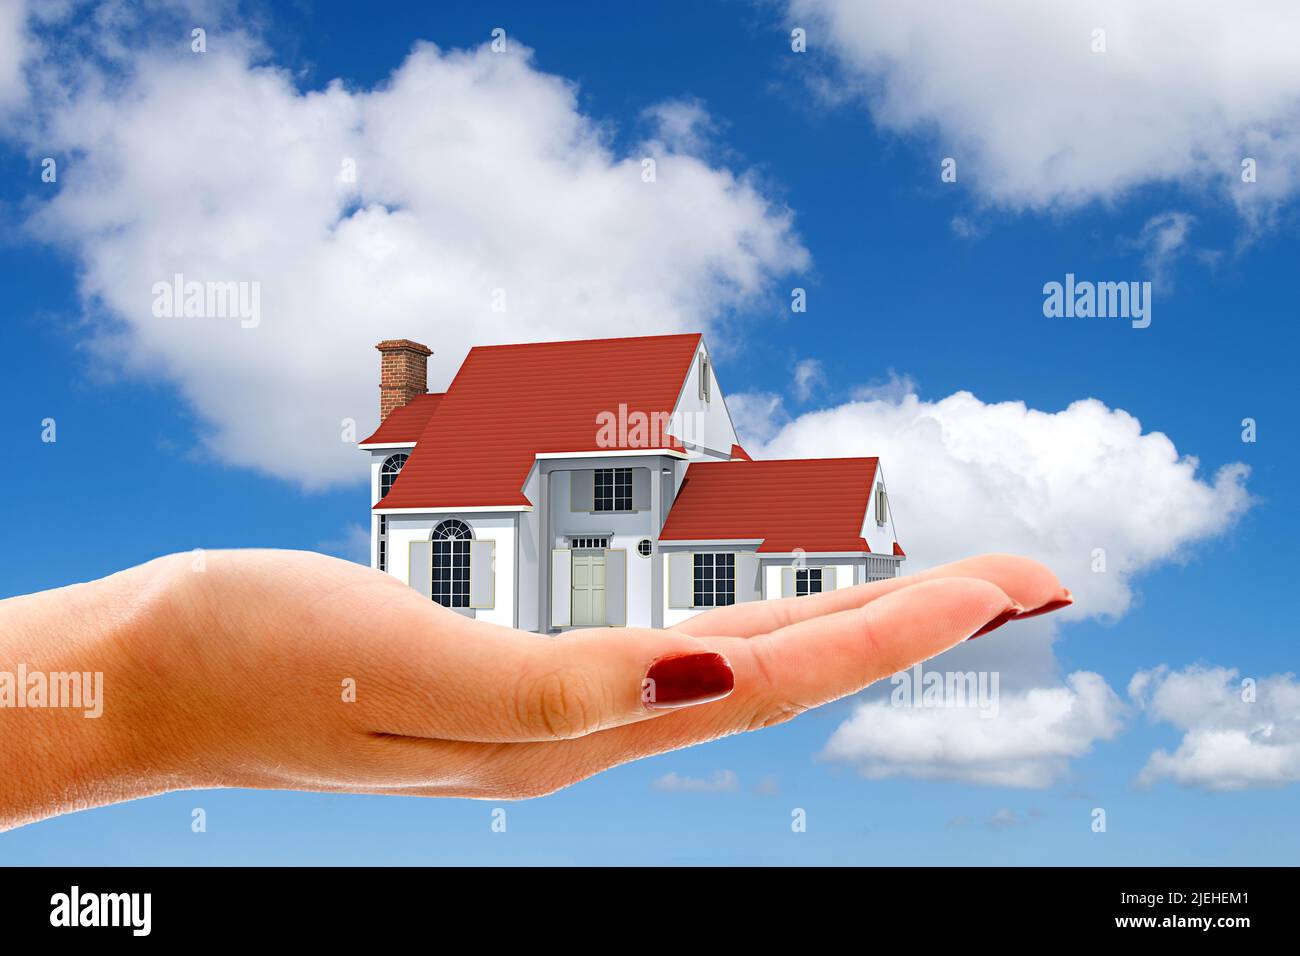 Hand mit Einfamilienhaus, Cumulus Wolken, blauer Himmel, Fruehling in Norddeutschland, Wunschhaus, Traumhaus, Baufinanzierung, Hypothek, Kredit, Stock Photo